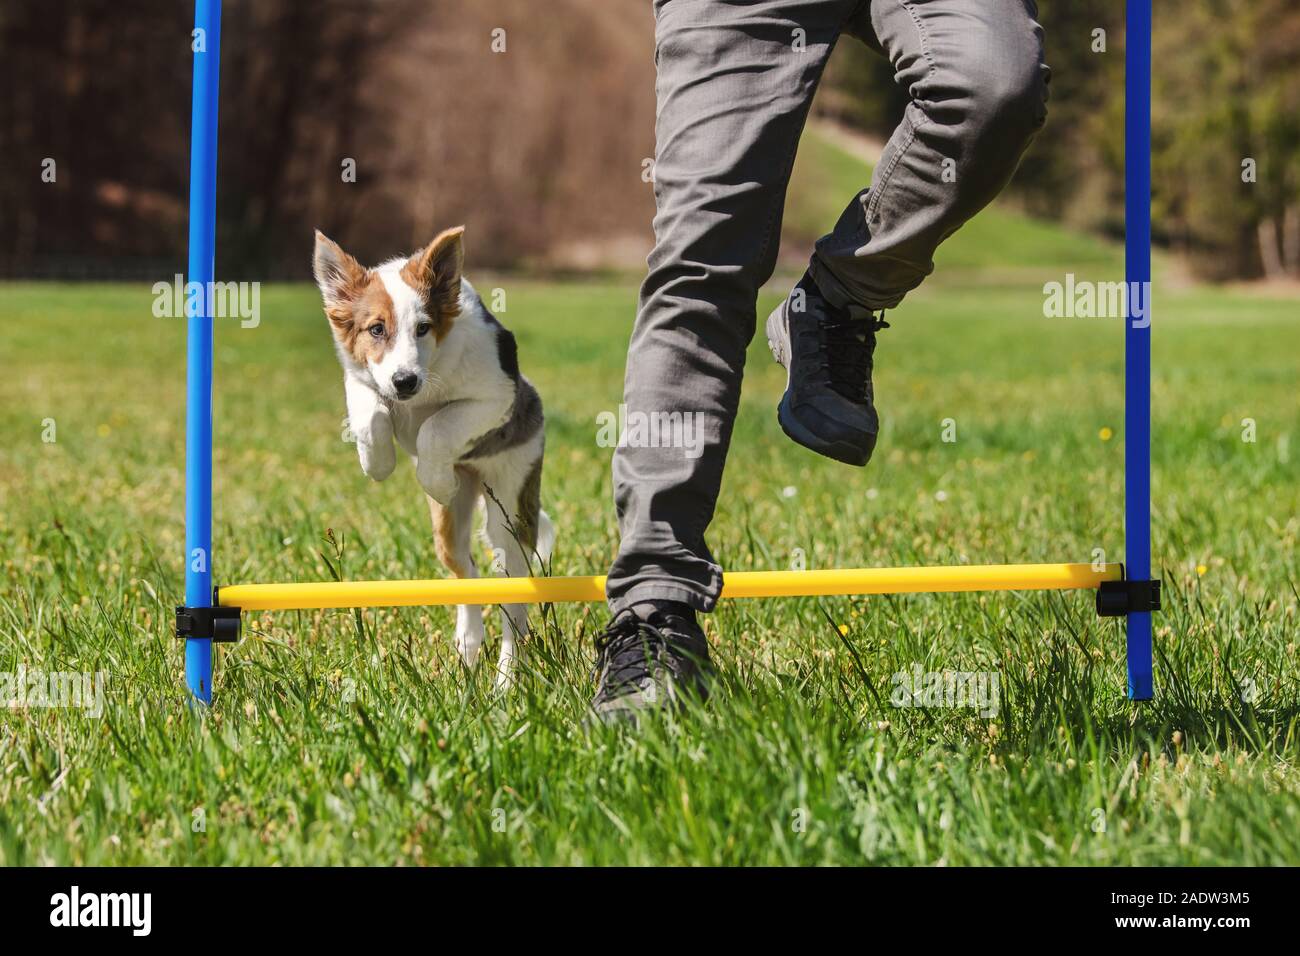 Agility Hund sport training mit einem Welpen Hund, Mensch und Welpe  springen über Hindernisse Stockfotografie - Alamy